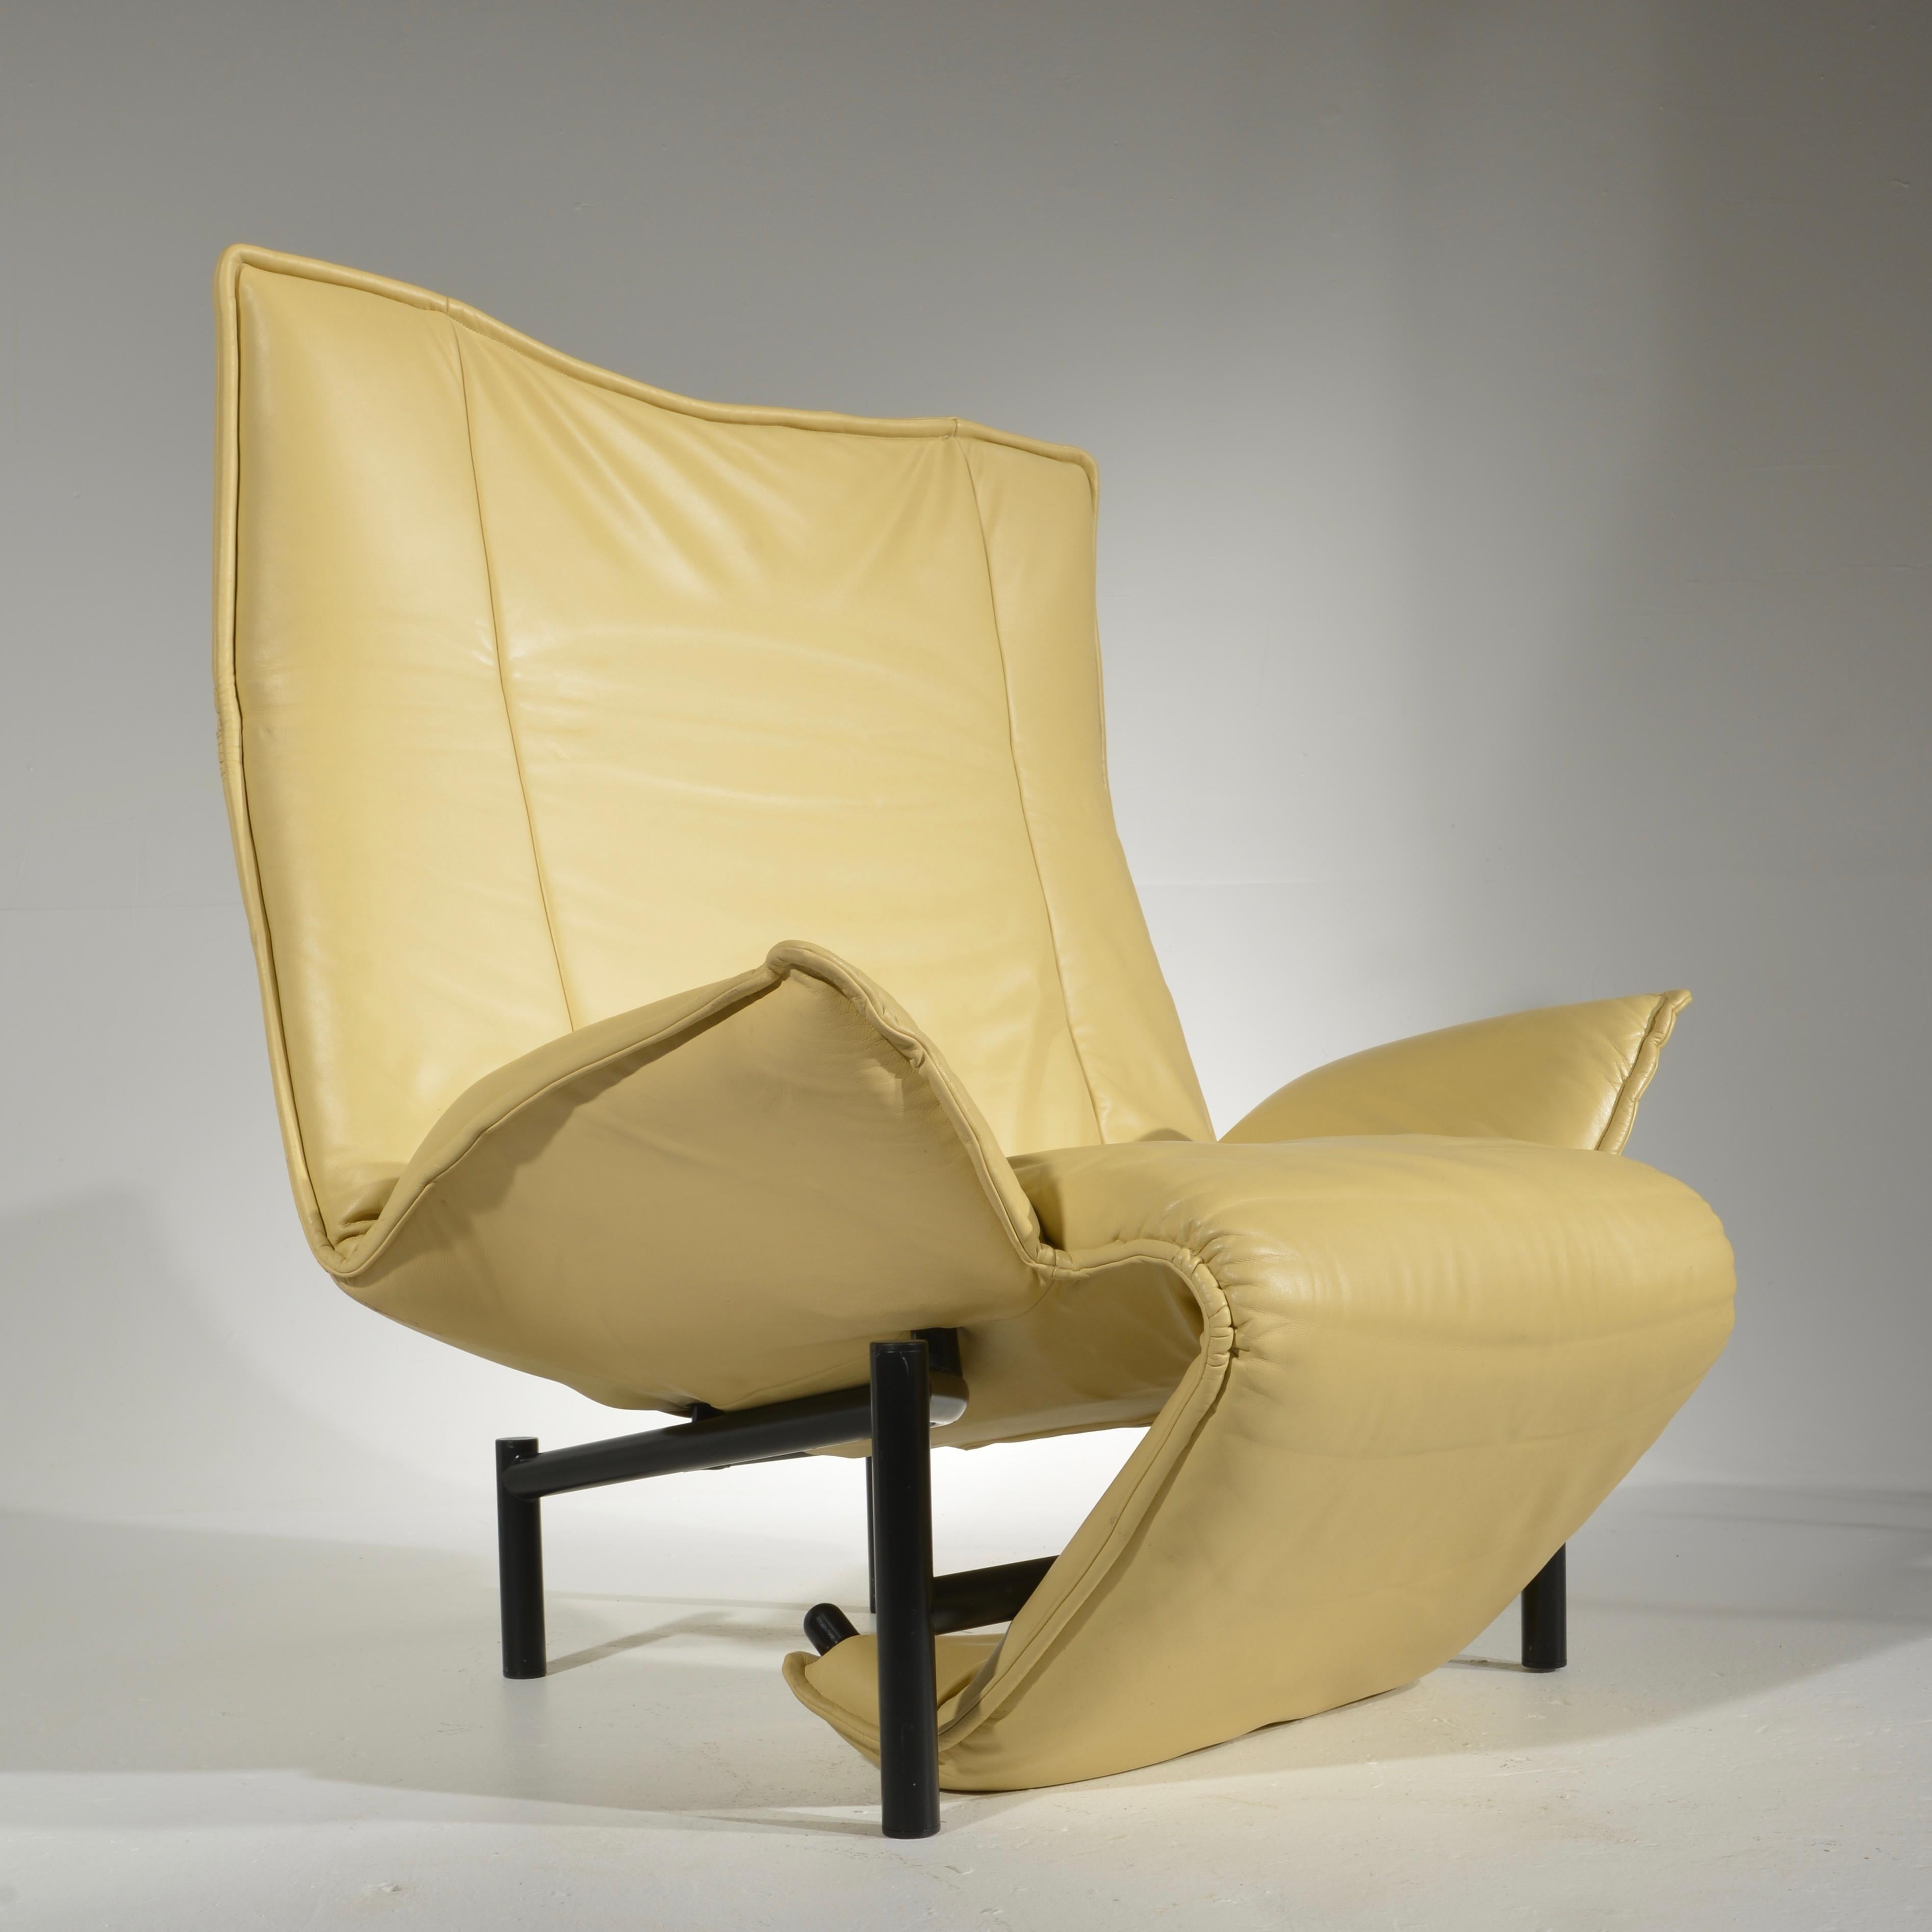 Italian Veranda Lounge Chair by Vico Magistretti for Cassina